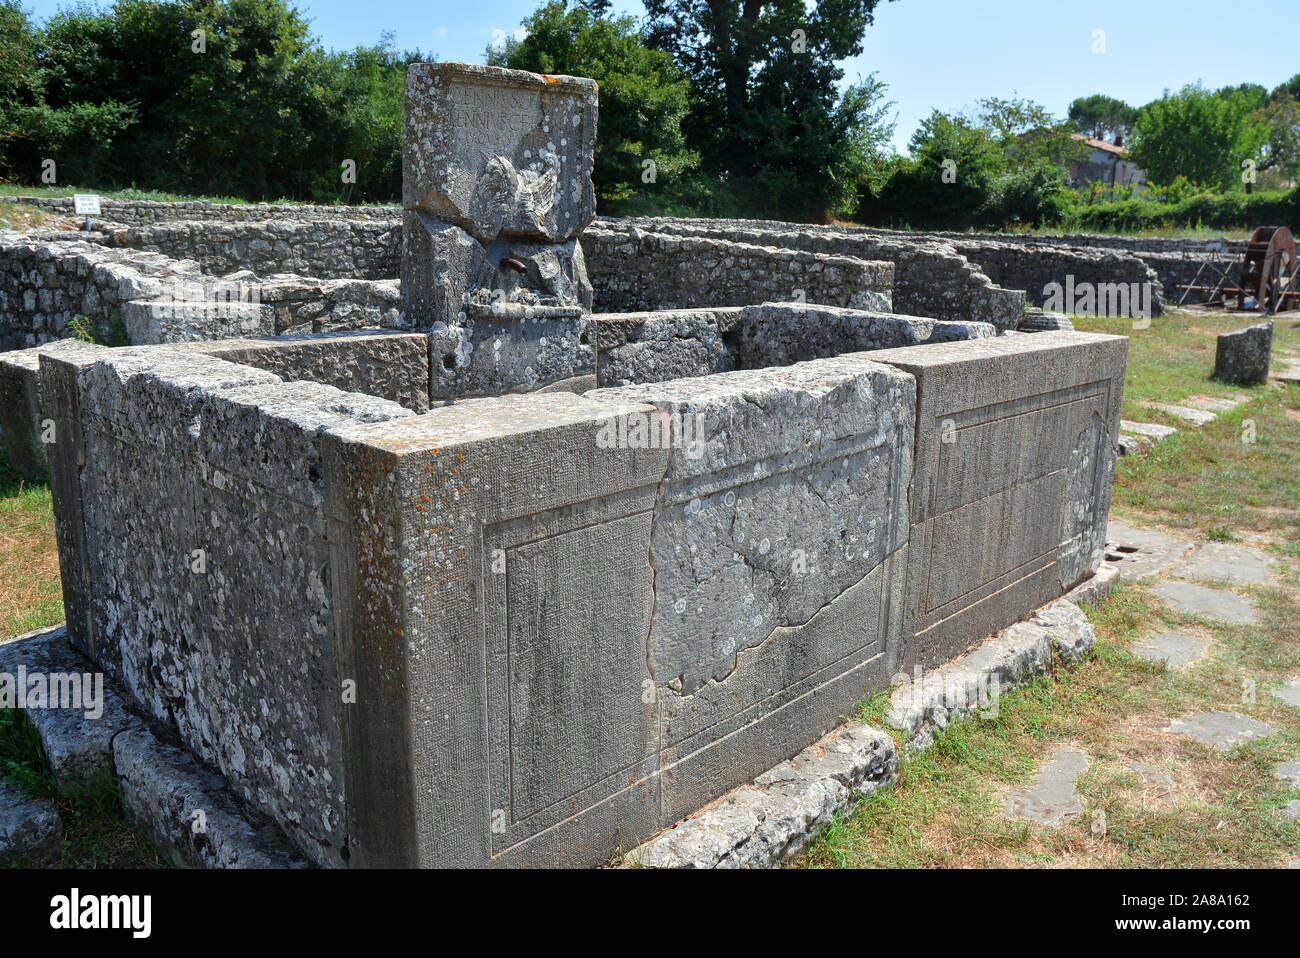 Sepino, Molise, Italia. Altilia il sito archeologico si trova in Sepino, in provincia di Campobasso. Il nome Altilia indica la città romana. Foto Stock